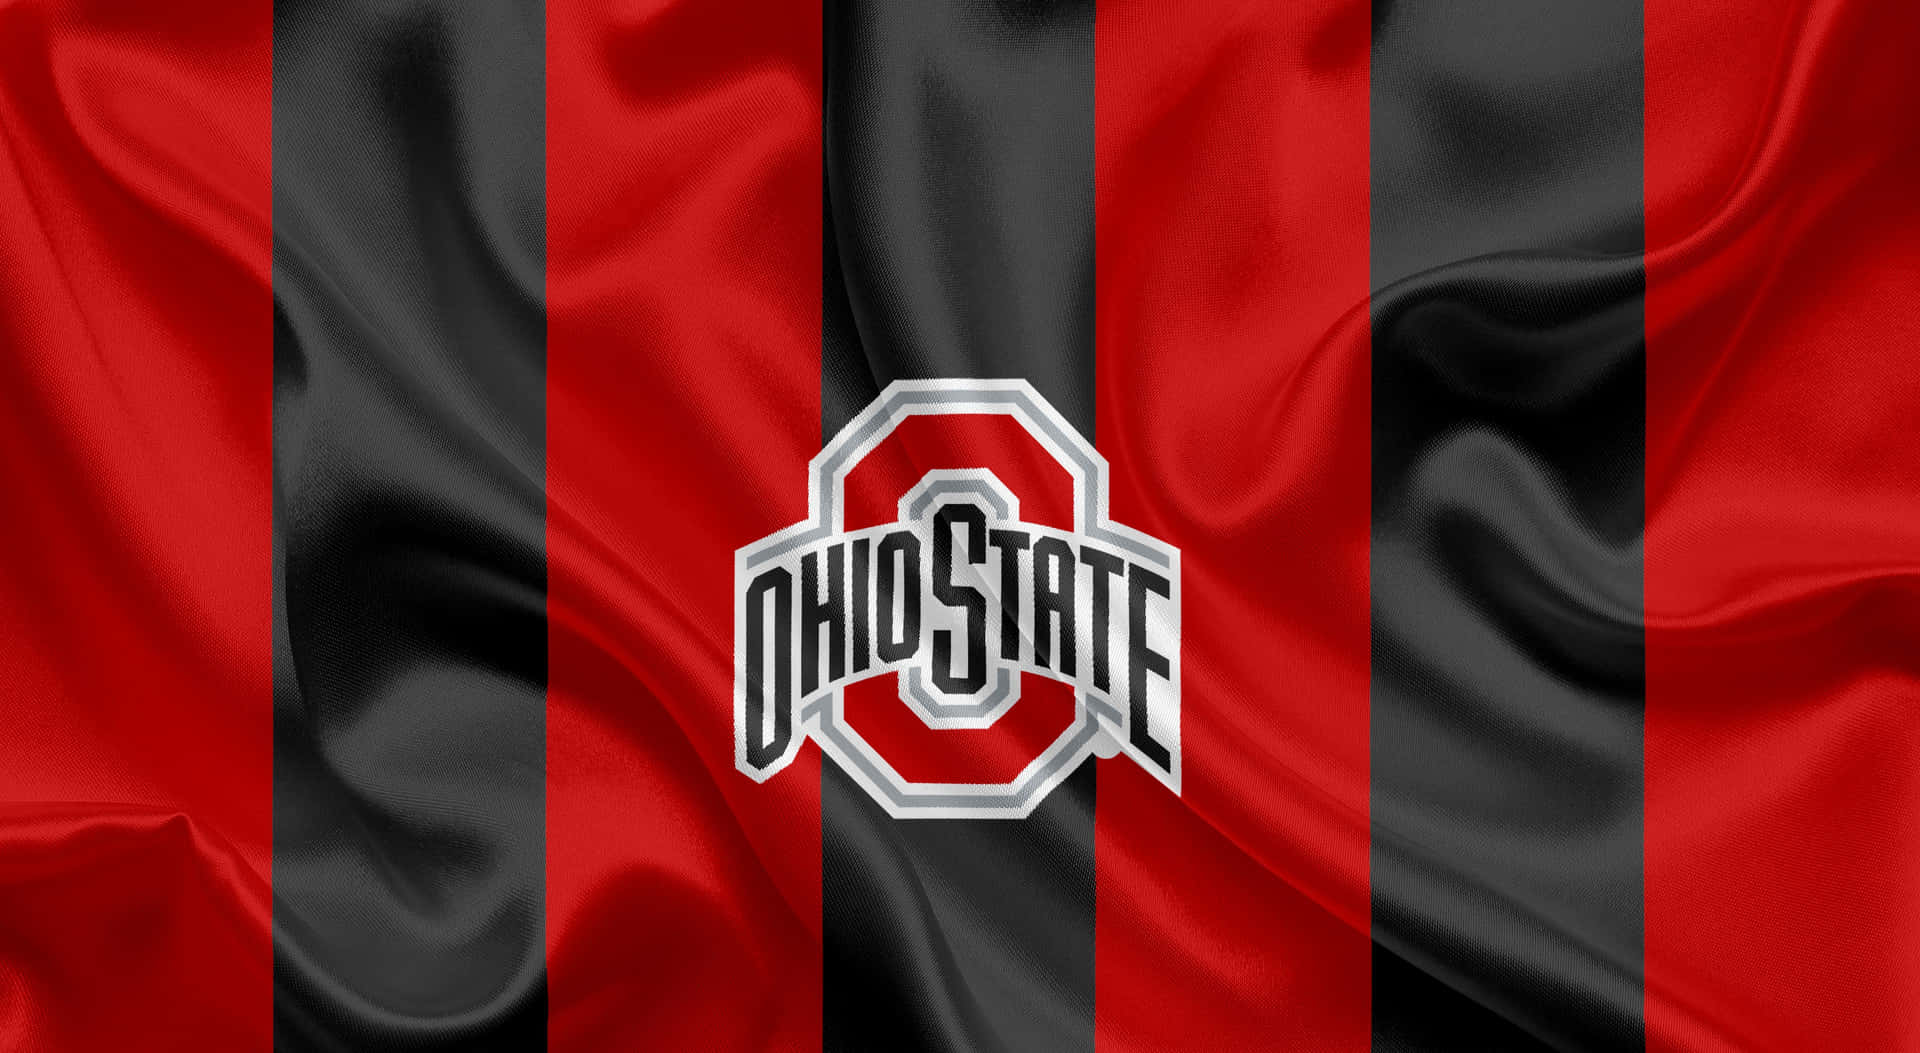 Ohiostate University-logotyp På En Röd Och Svart Bakgrund. Wallpaper